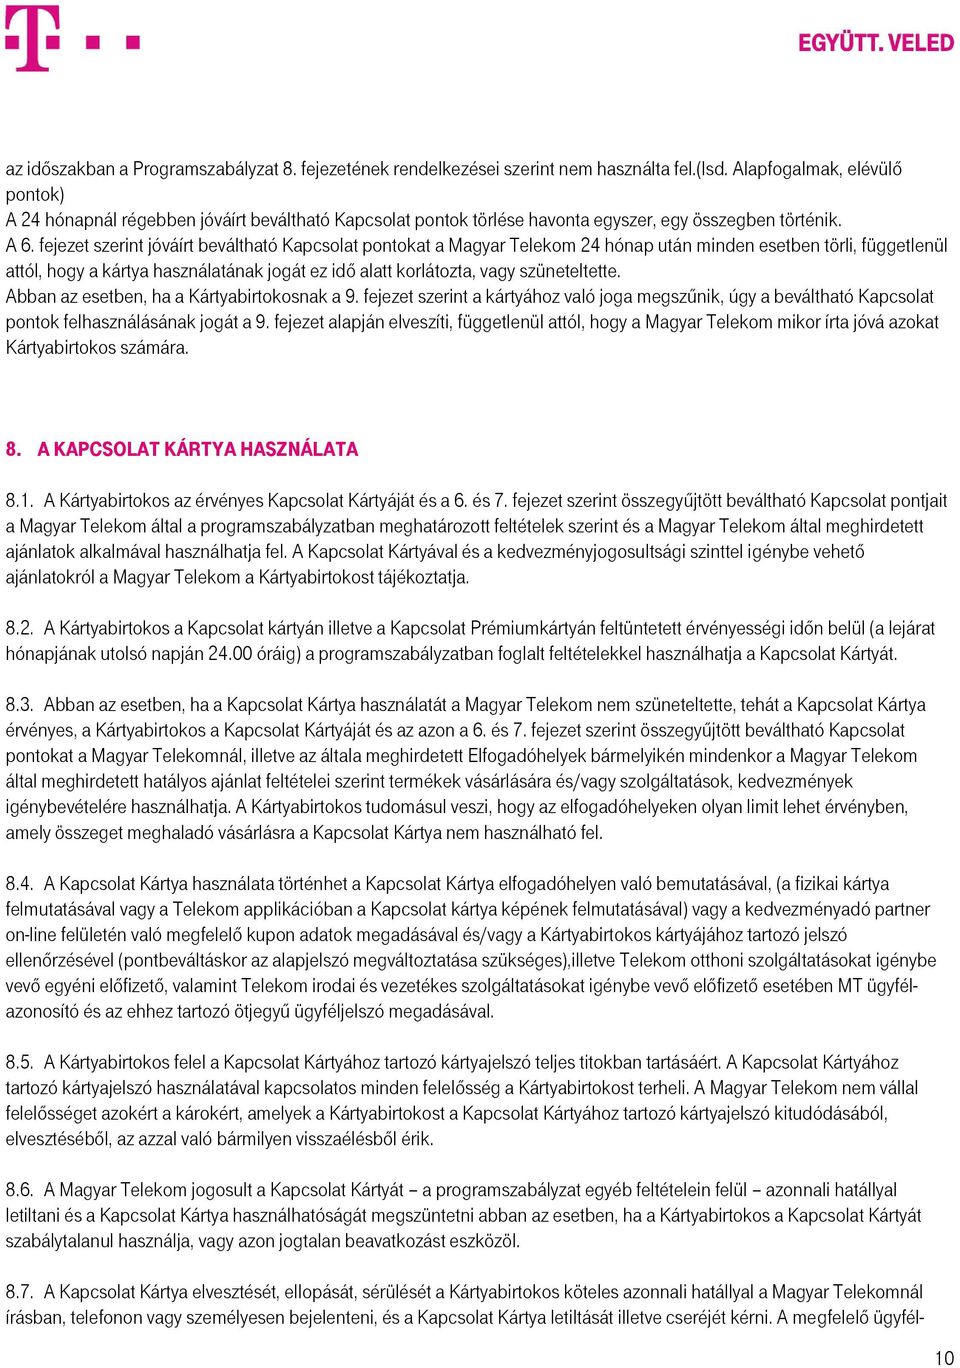 fejezet szerint jóváírt beváltható Kapcsolat pontokat a Magyar Telekom 24 hónap után minden esetben törli, függetlenül attól, hogy a kártya használatának jogát ez idő alatt korlátozta, vagy